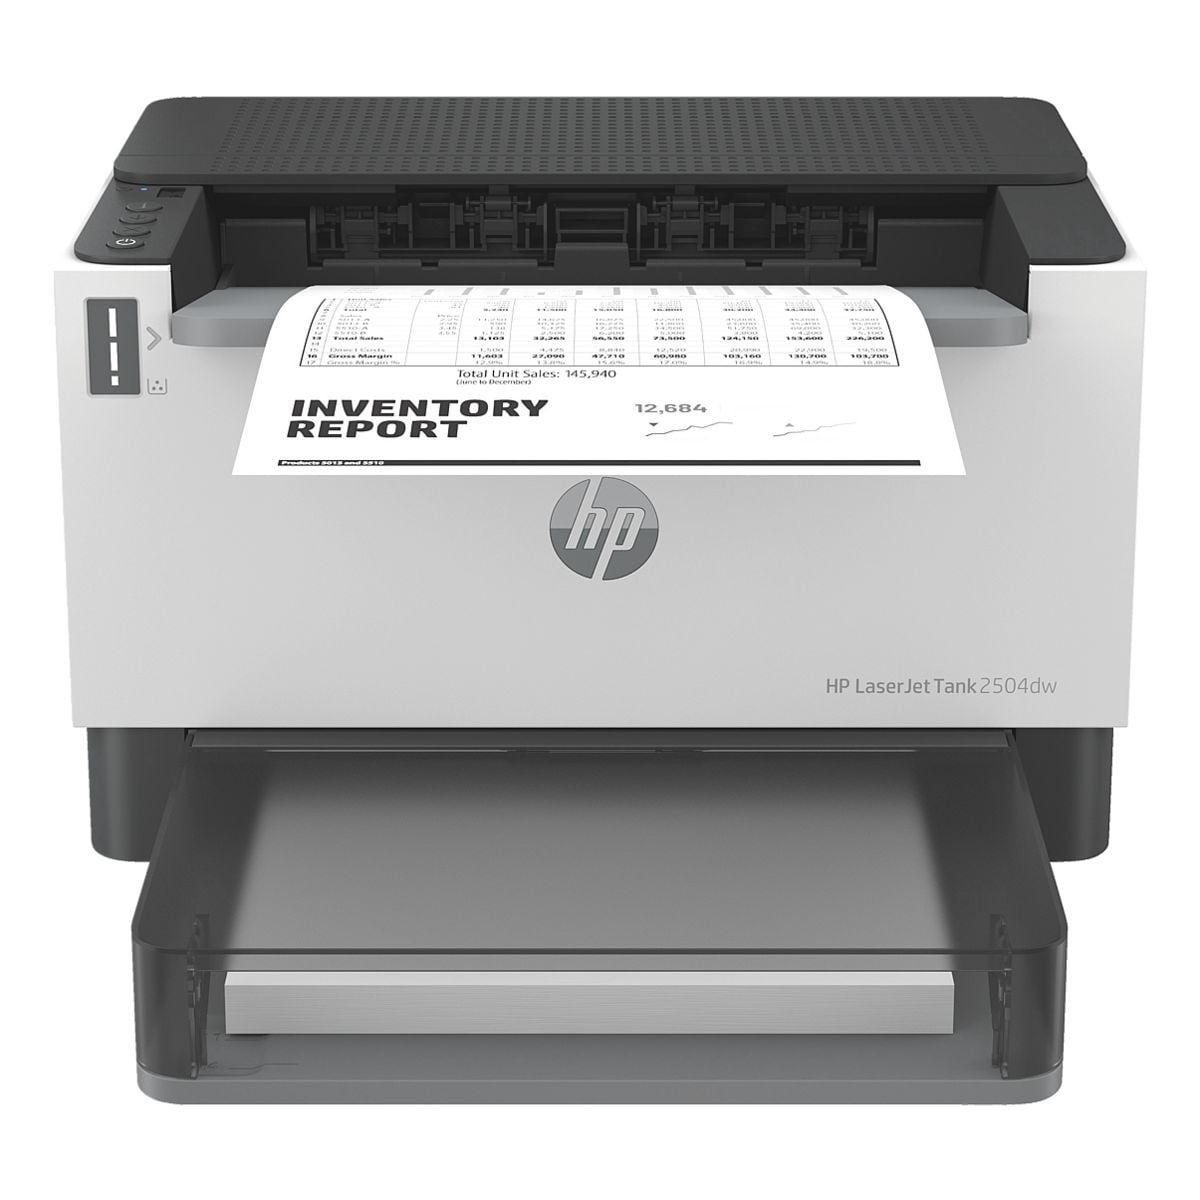 HP LaserJet Tank 2504dw Laserdrucker, A4 schwarz wei Laserdrucker mit LAN und WLAN - HP Instant Ink-fhig